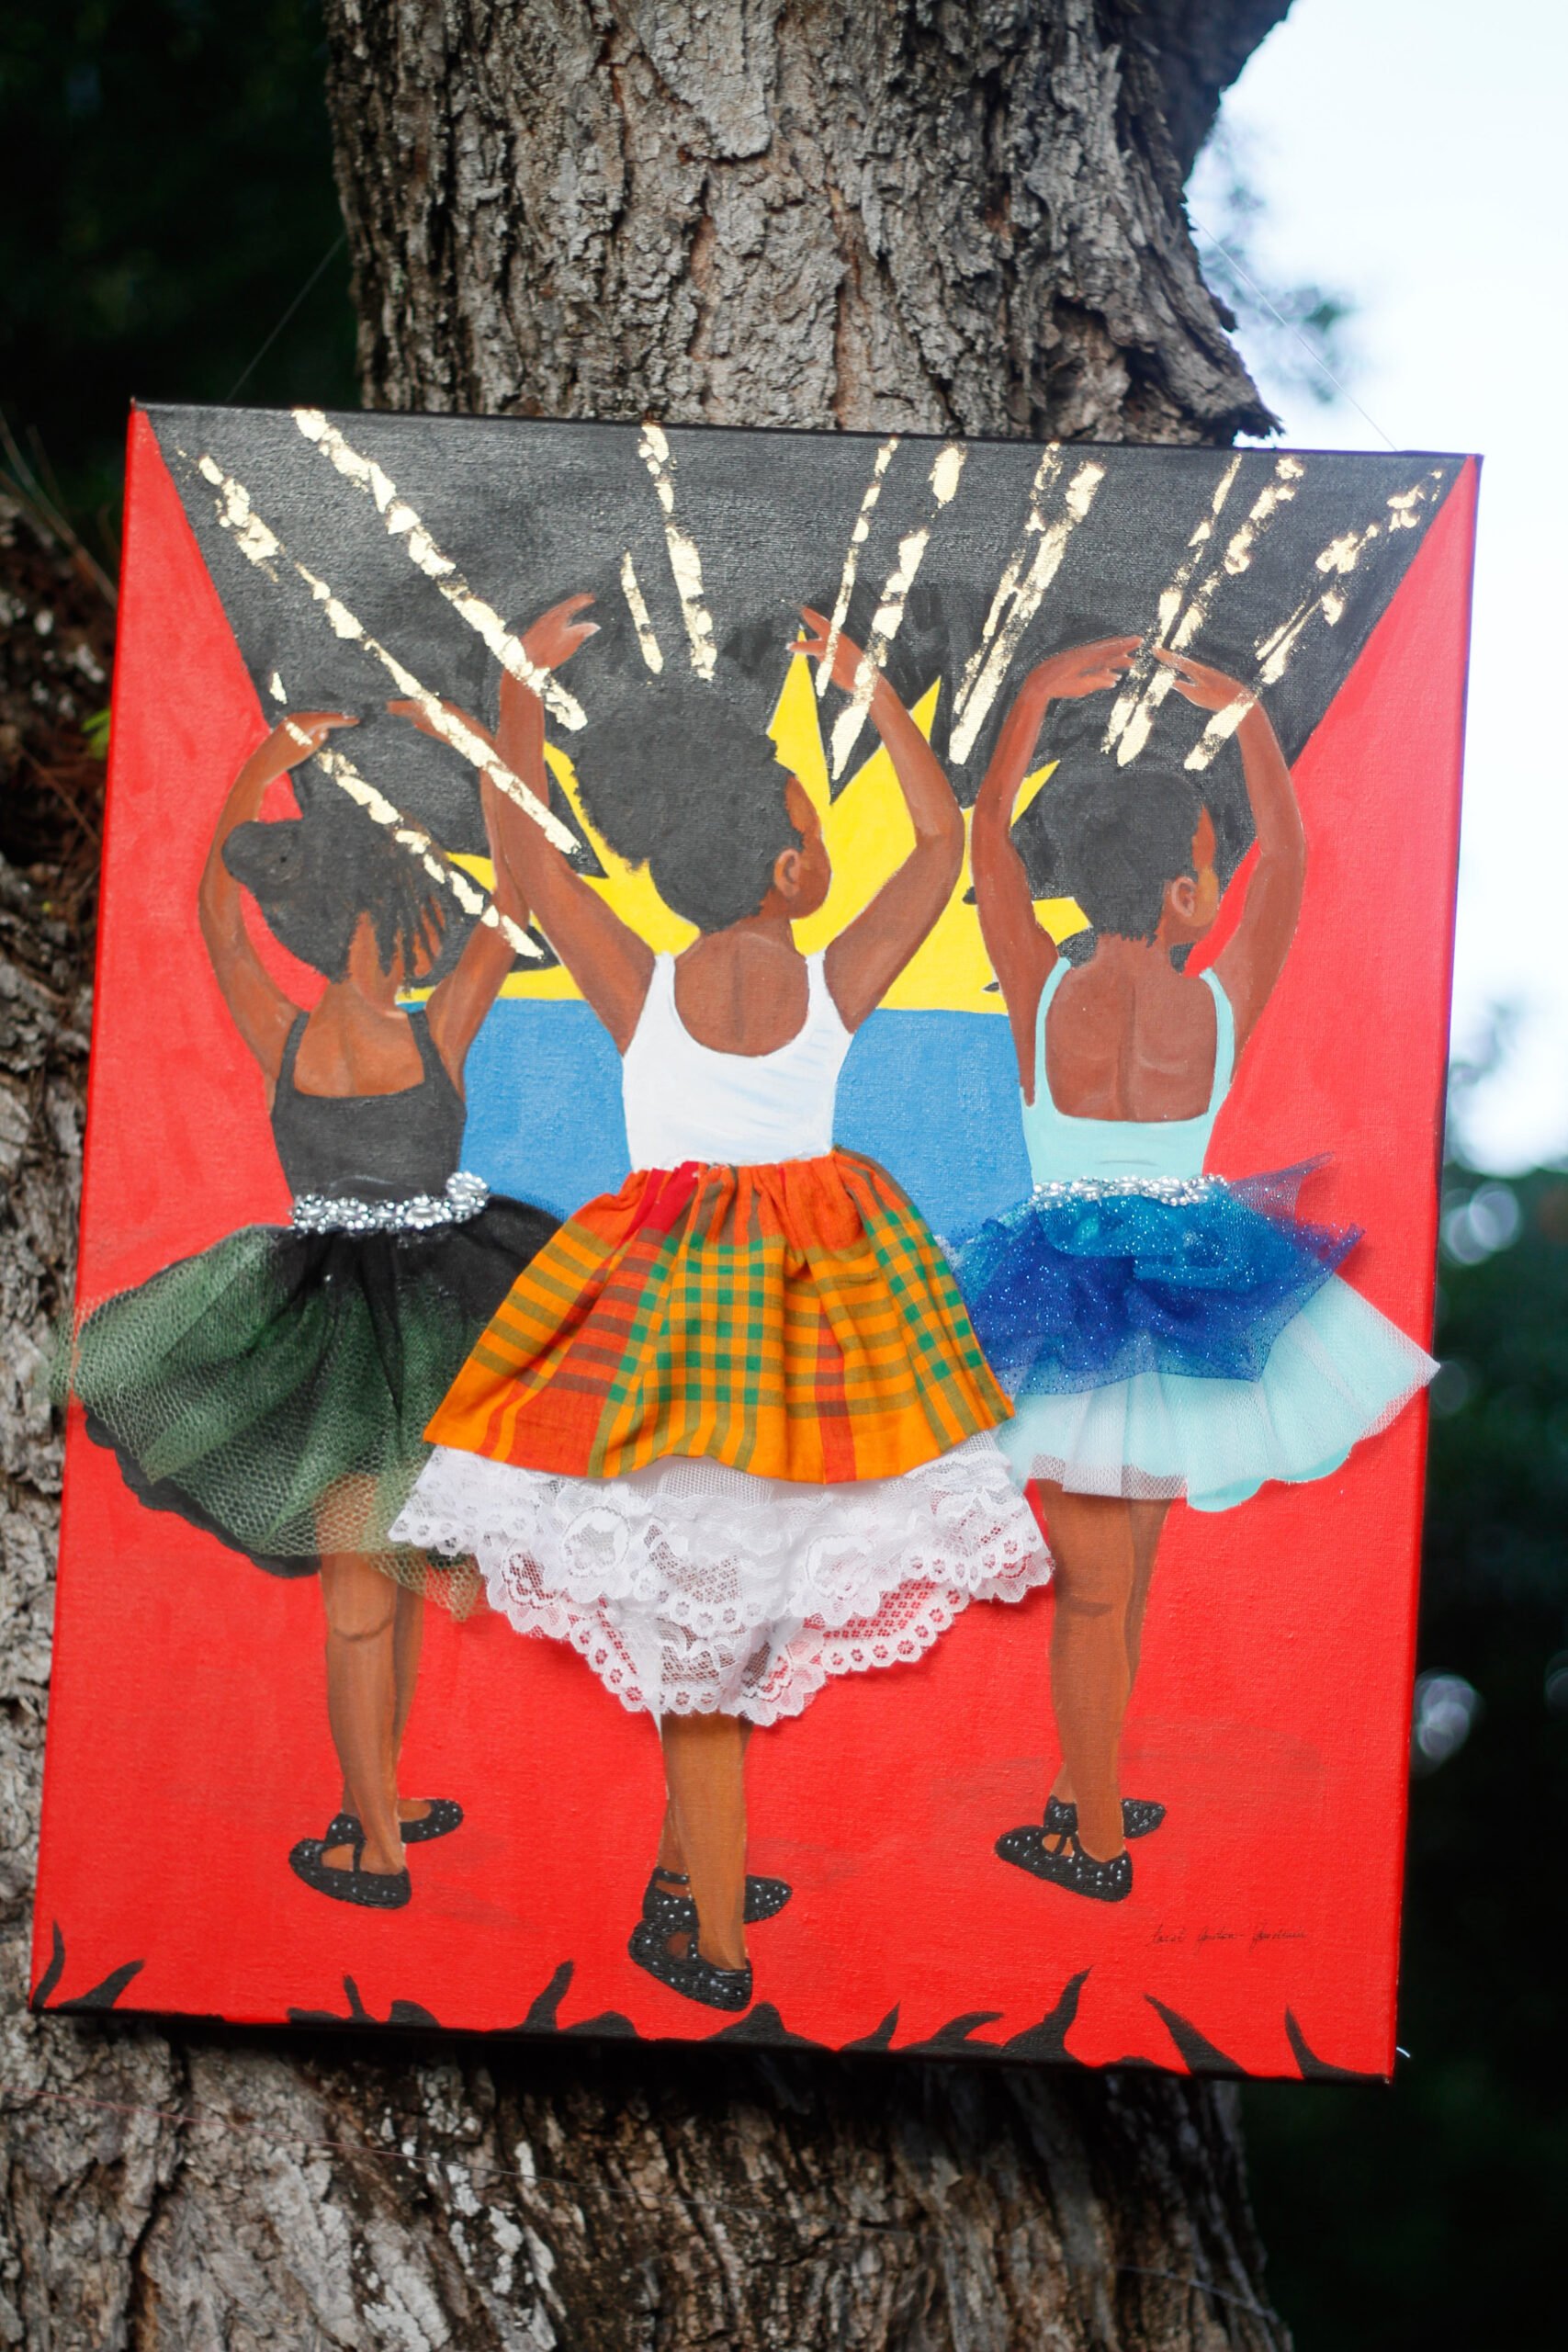 Antigua and Barbuda Art Week – Visit Antigua & Barbuda